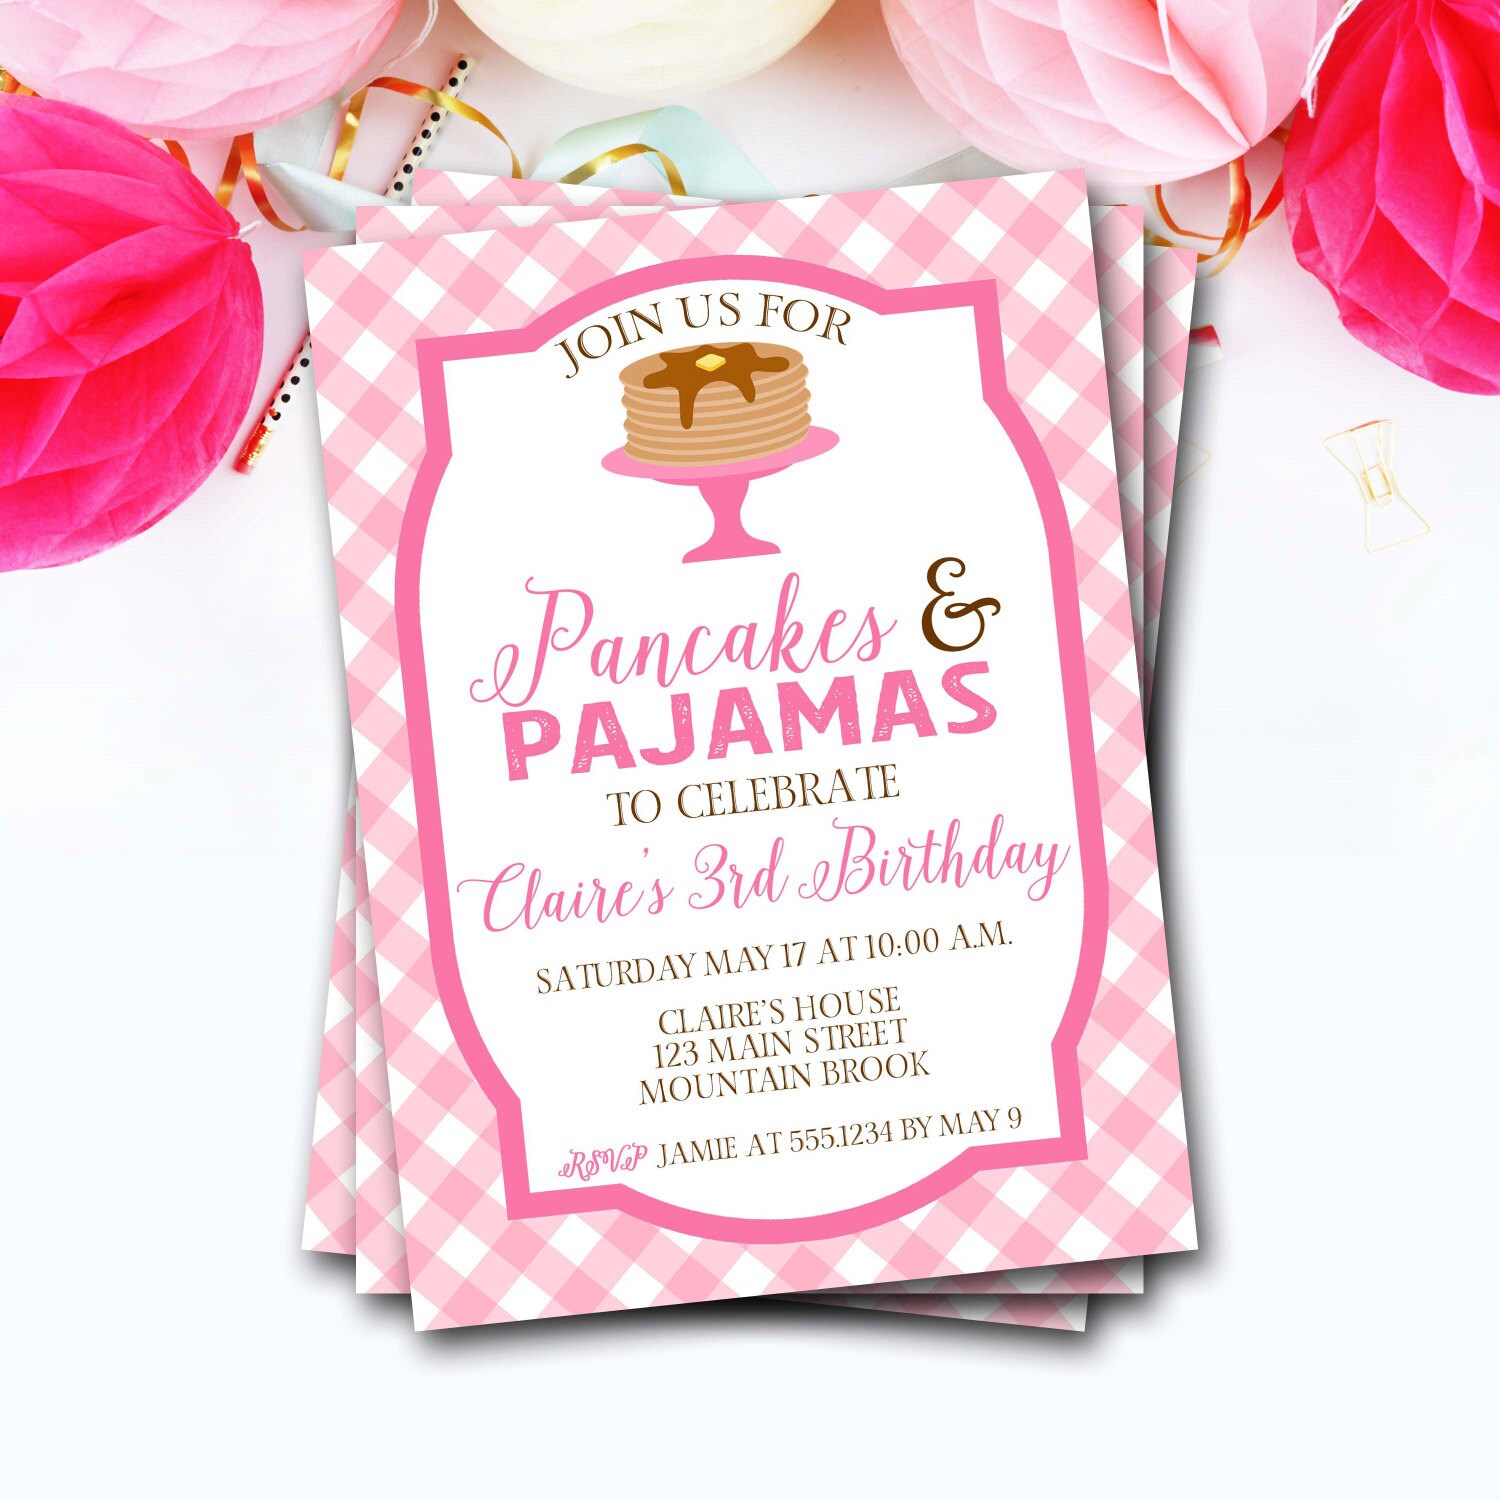 Pancakes & Pajamas Birthday Invitation, & Pancake Breakfast Birthday, Party